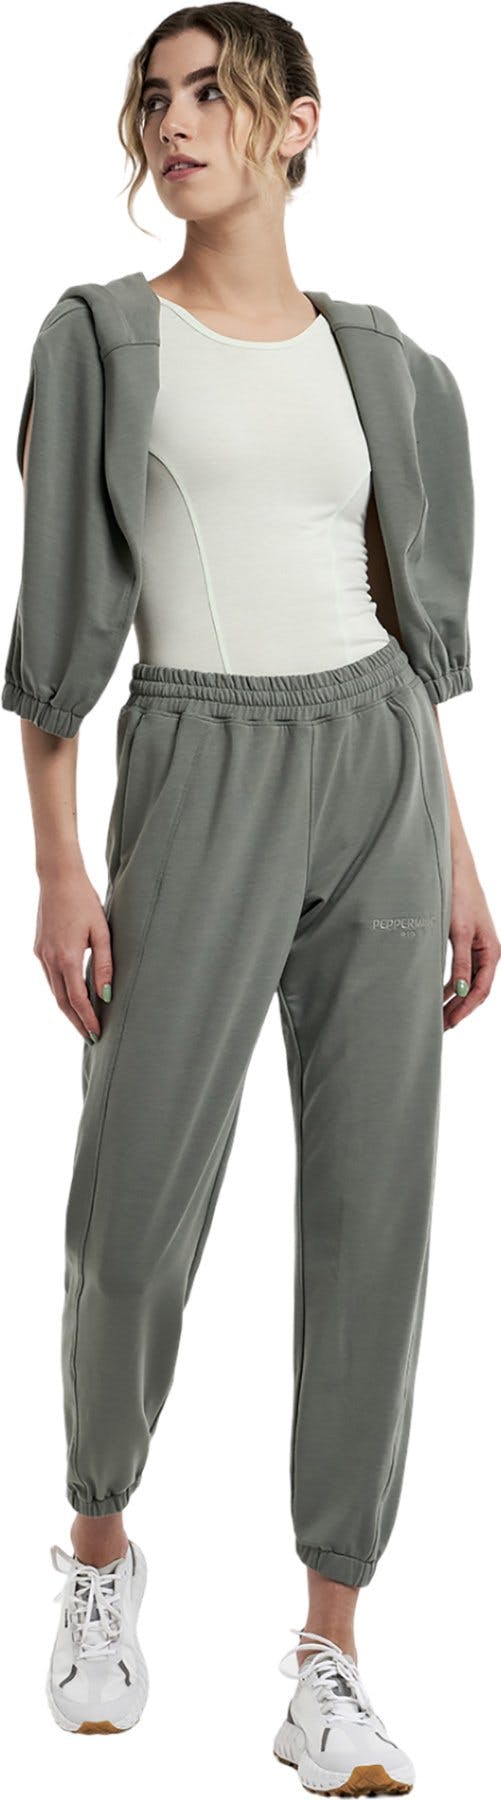 Numéro de l'image de la galerie de produits 2 pour le produit Pantalon de jogging taille haute OTB - Femme